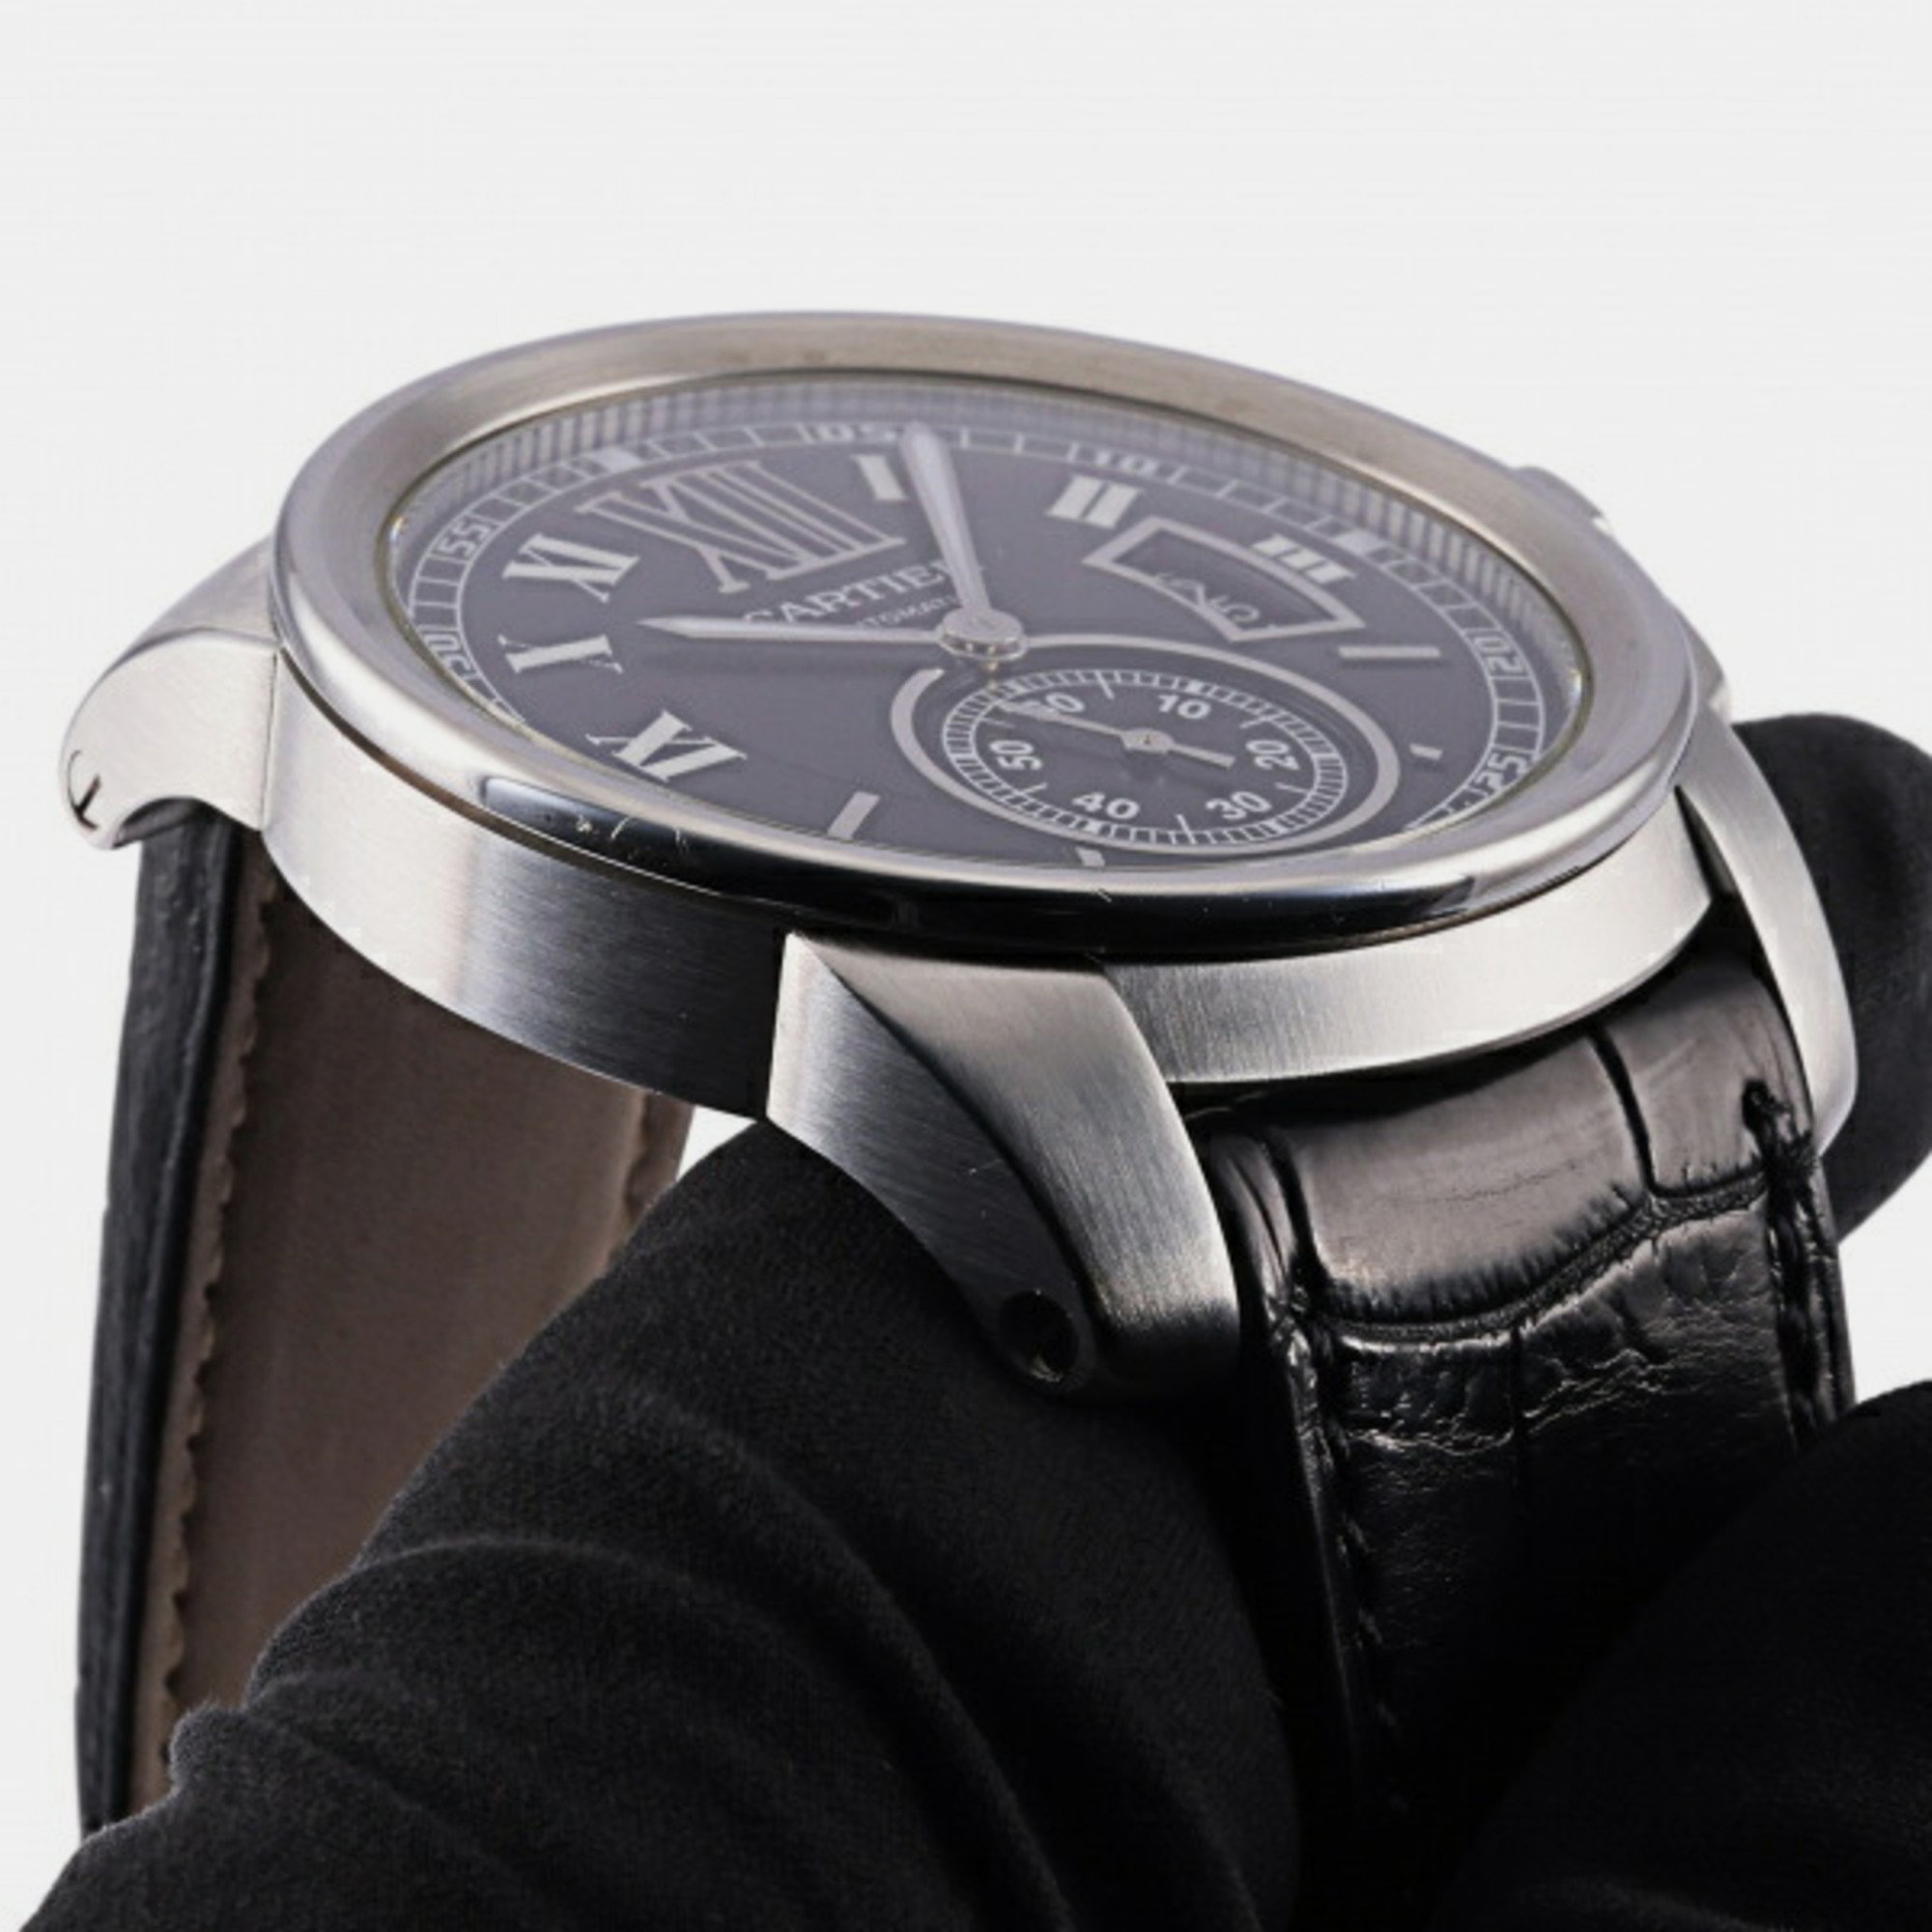 Cartier Black Stainless Steel Calibre De Cartier W7100014 Automatic Men's Wristwatch 42 Mm